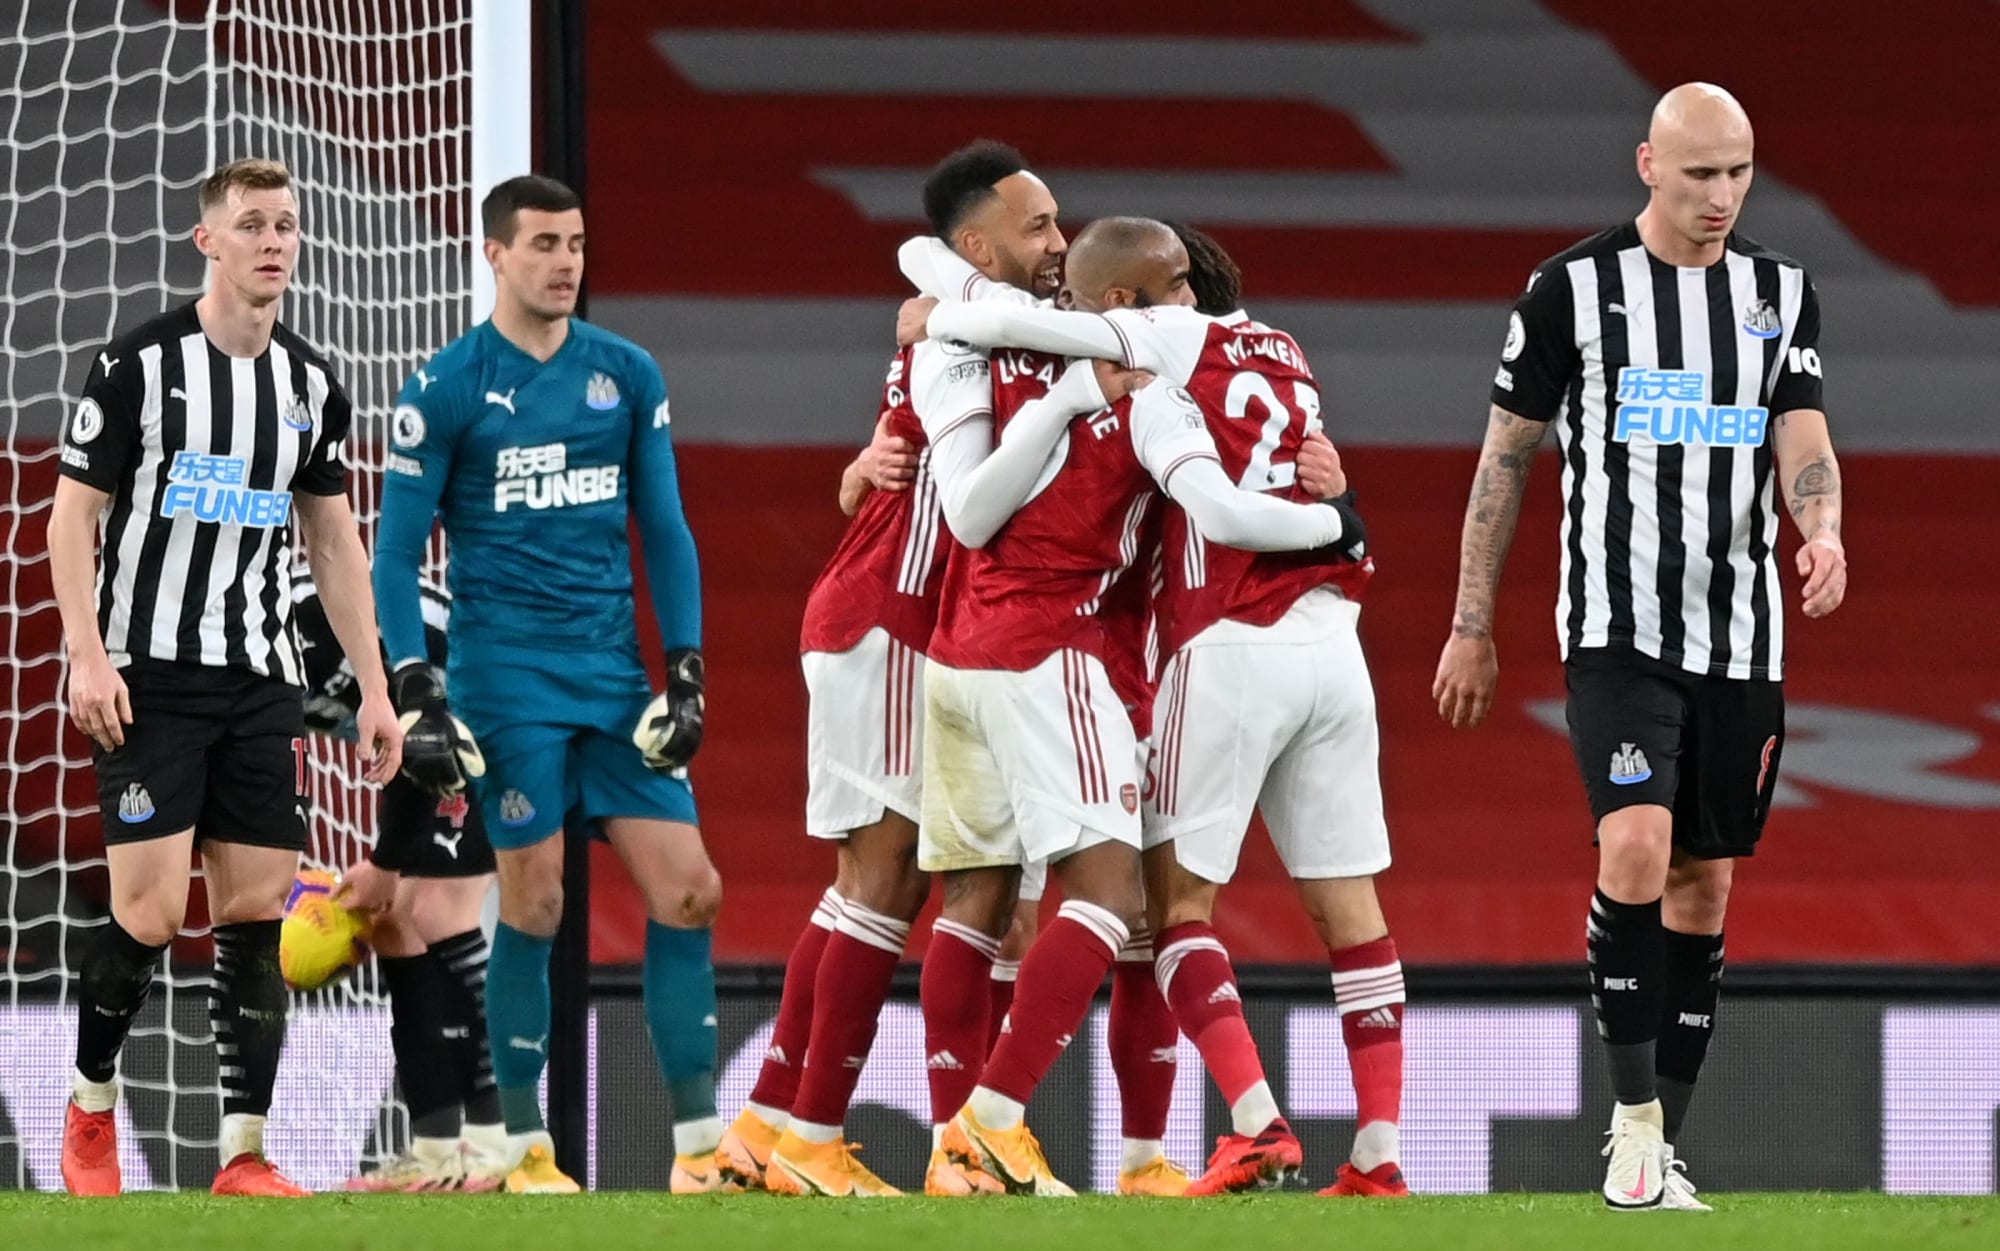 Newcastle vs Arsenal preview Sunday's Premier League clash